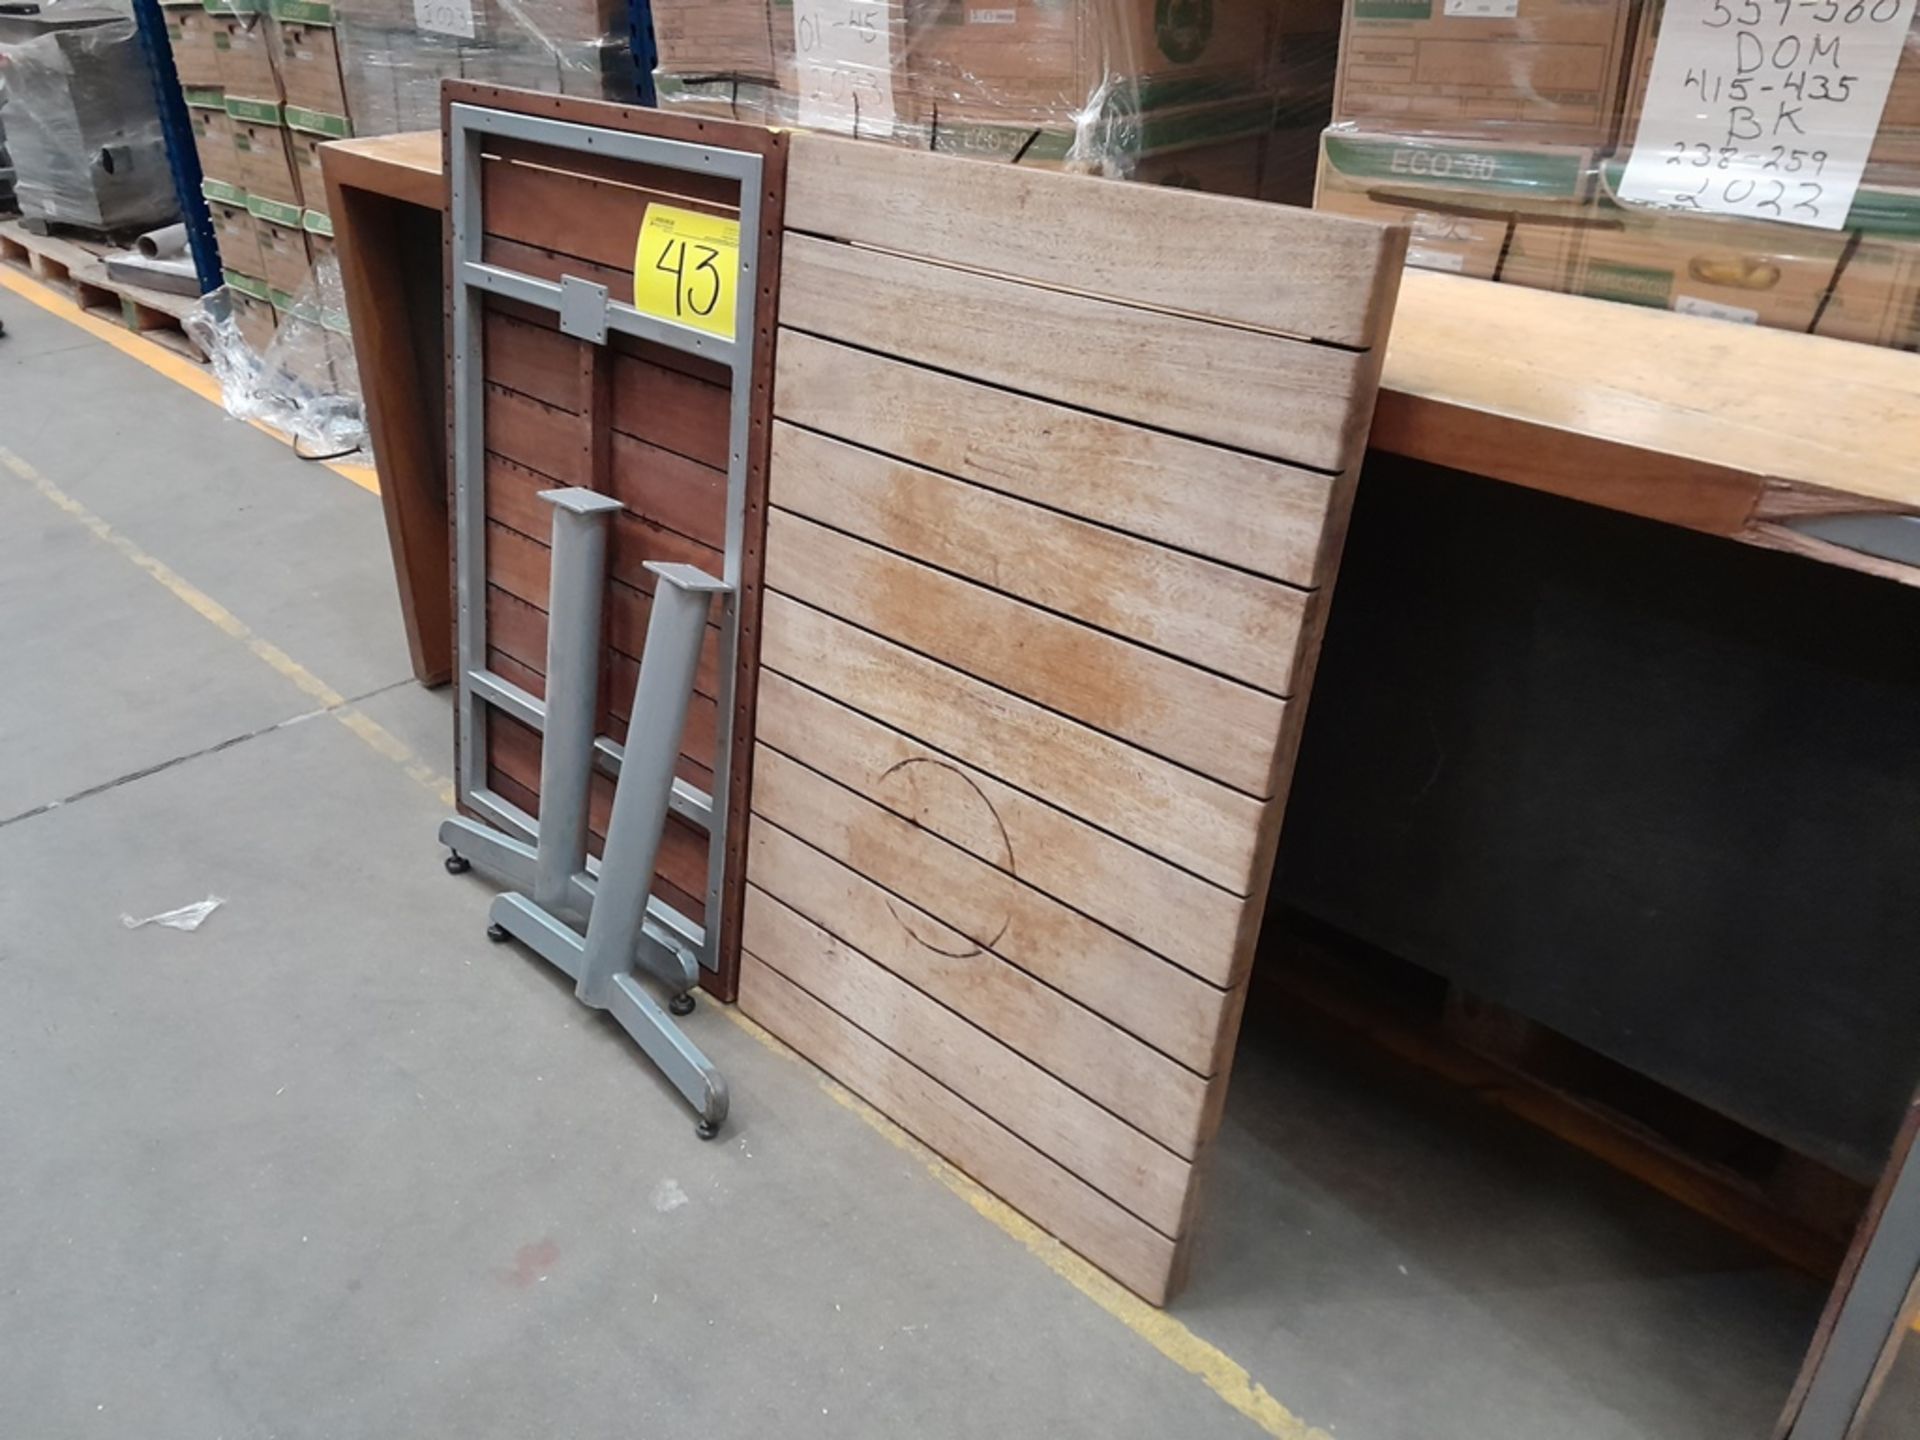 Lote de 7 mesas de madera con base de metal de aprox. 75 x 115 cm - Image 3 of 7